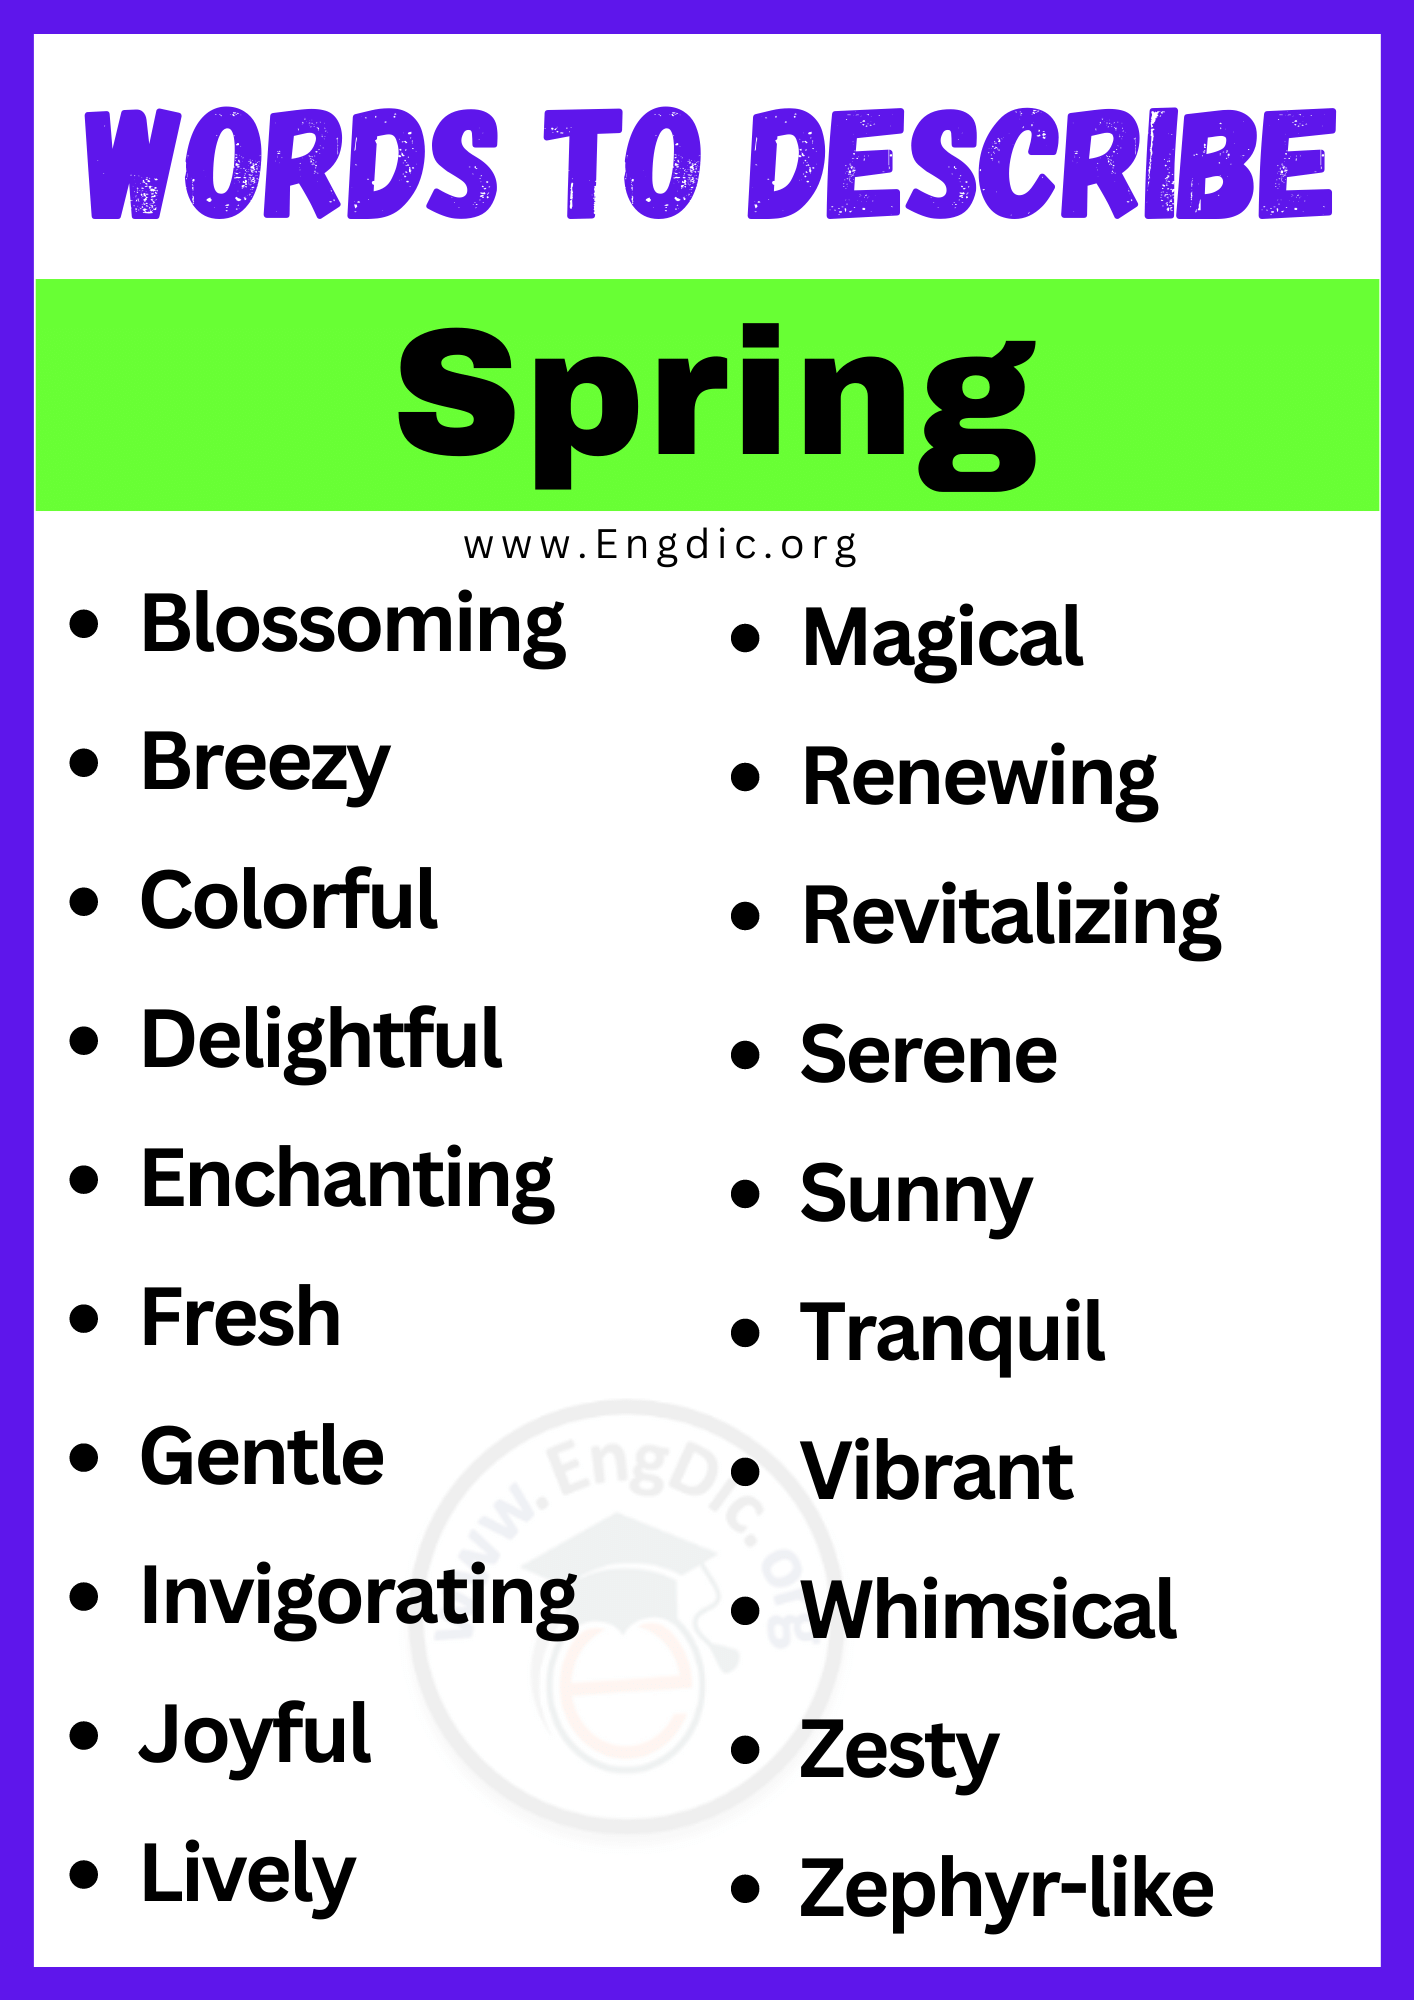 Words to Describe Spring